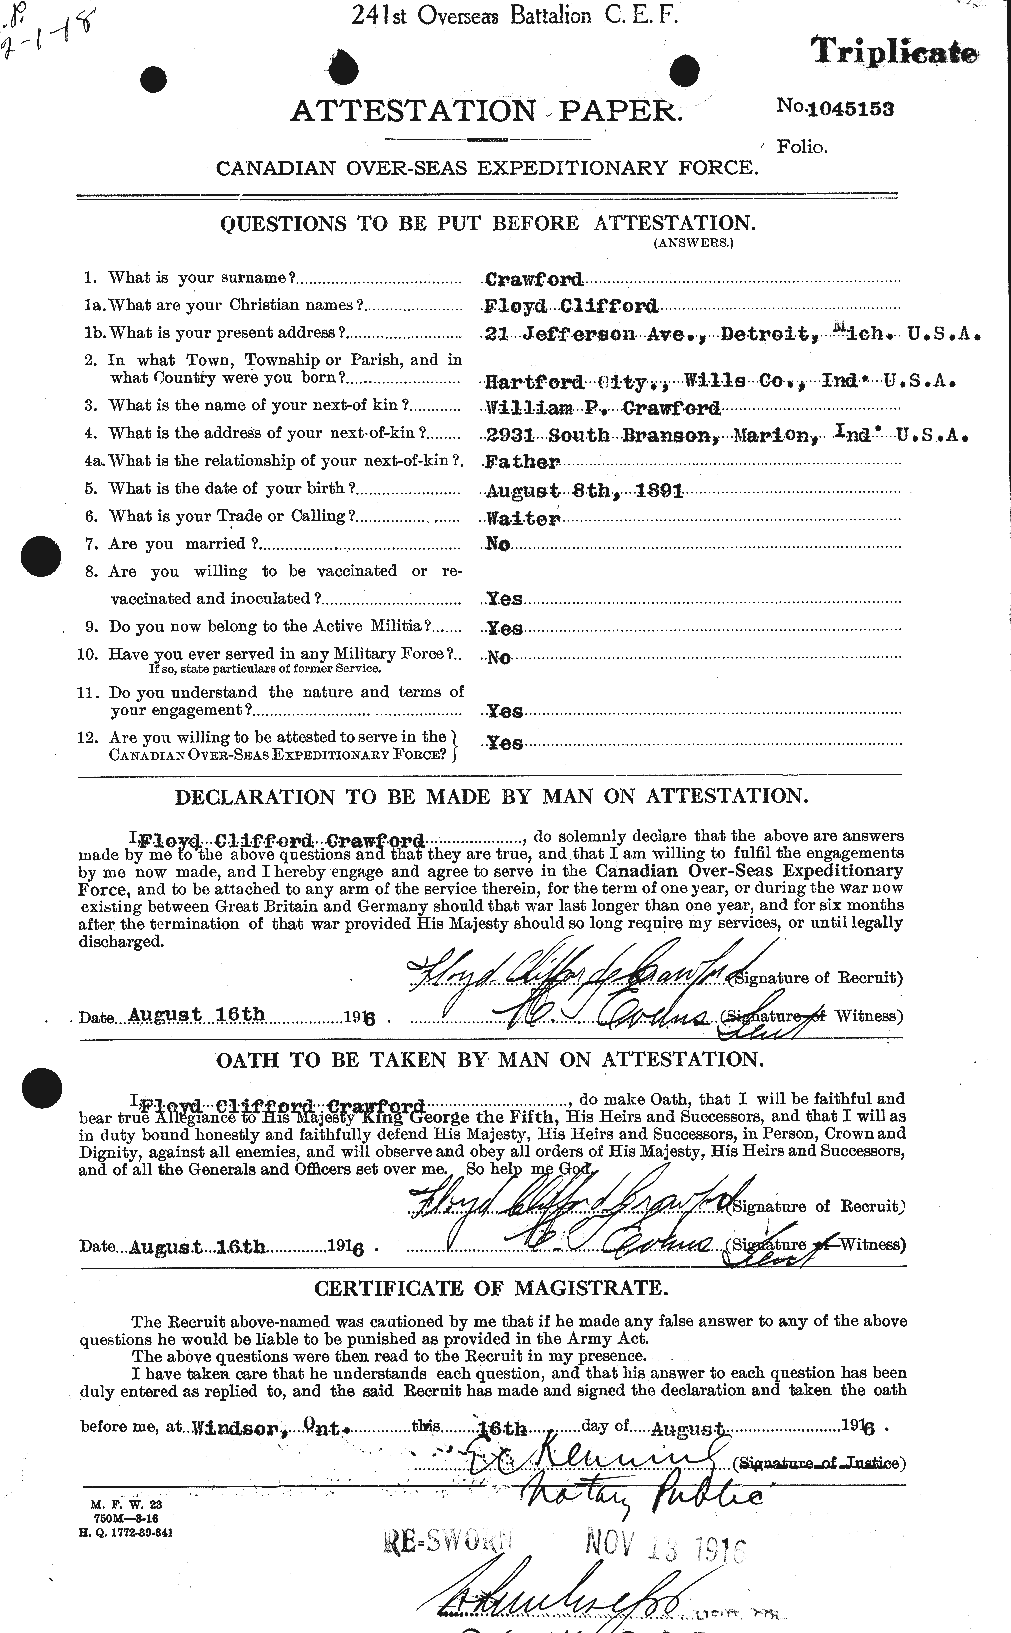 Dossiers du Personnel de la Première Guerre mondiale - CEC 060740a